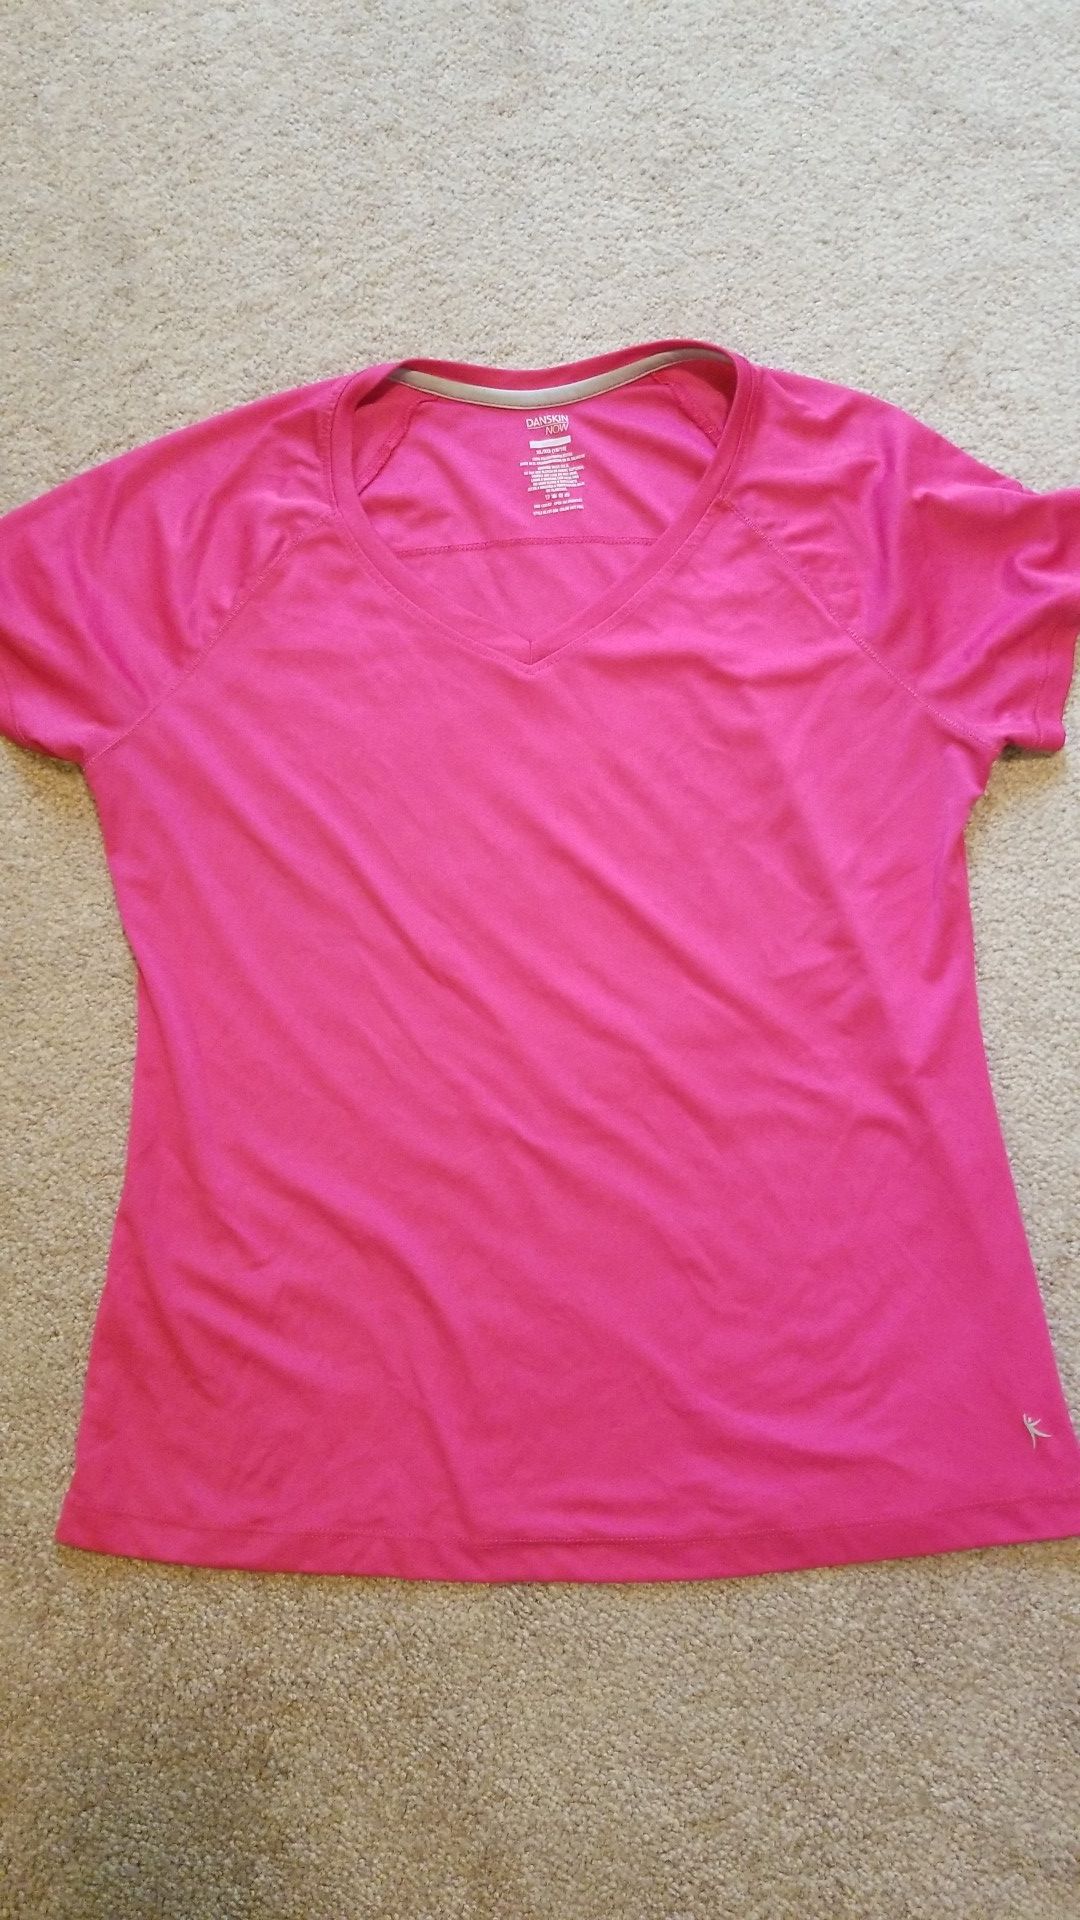 Danskin shirt XL, hot pink